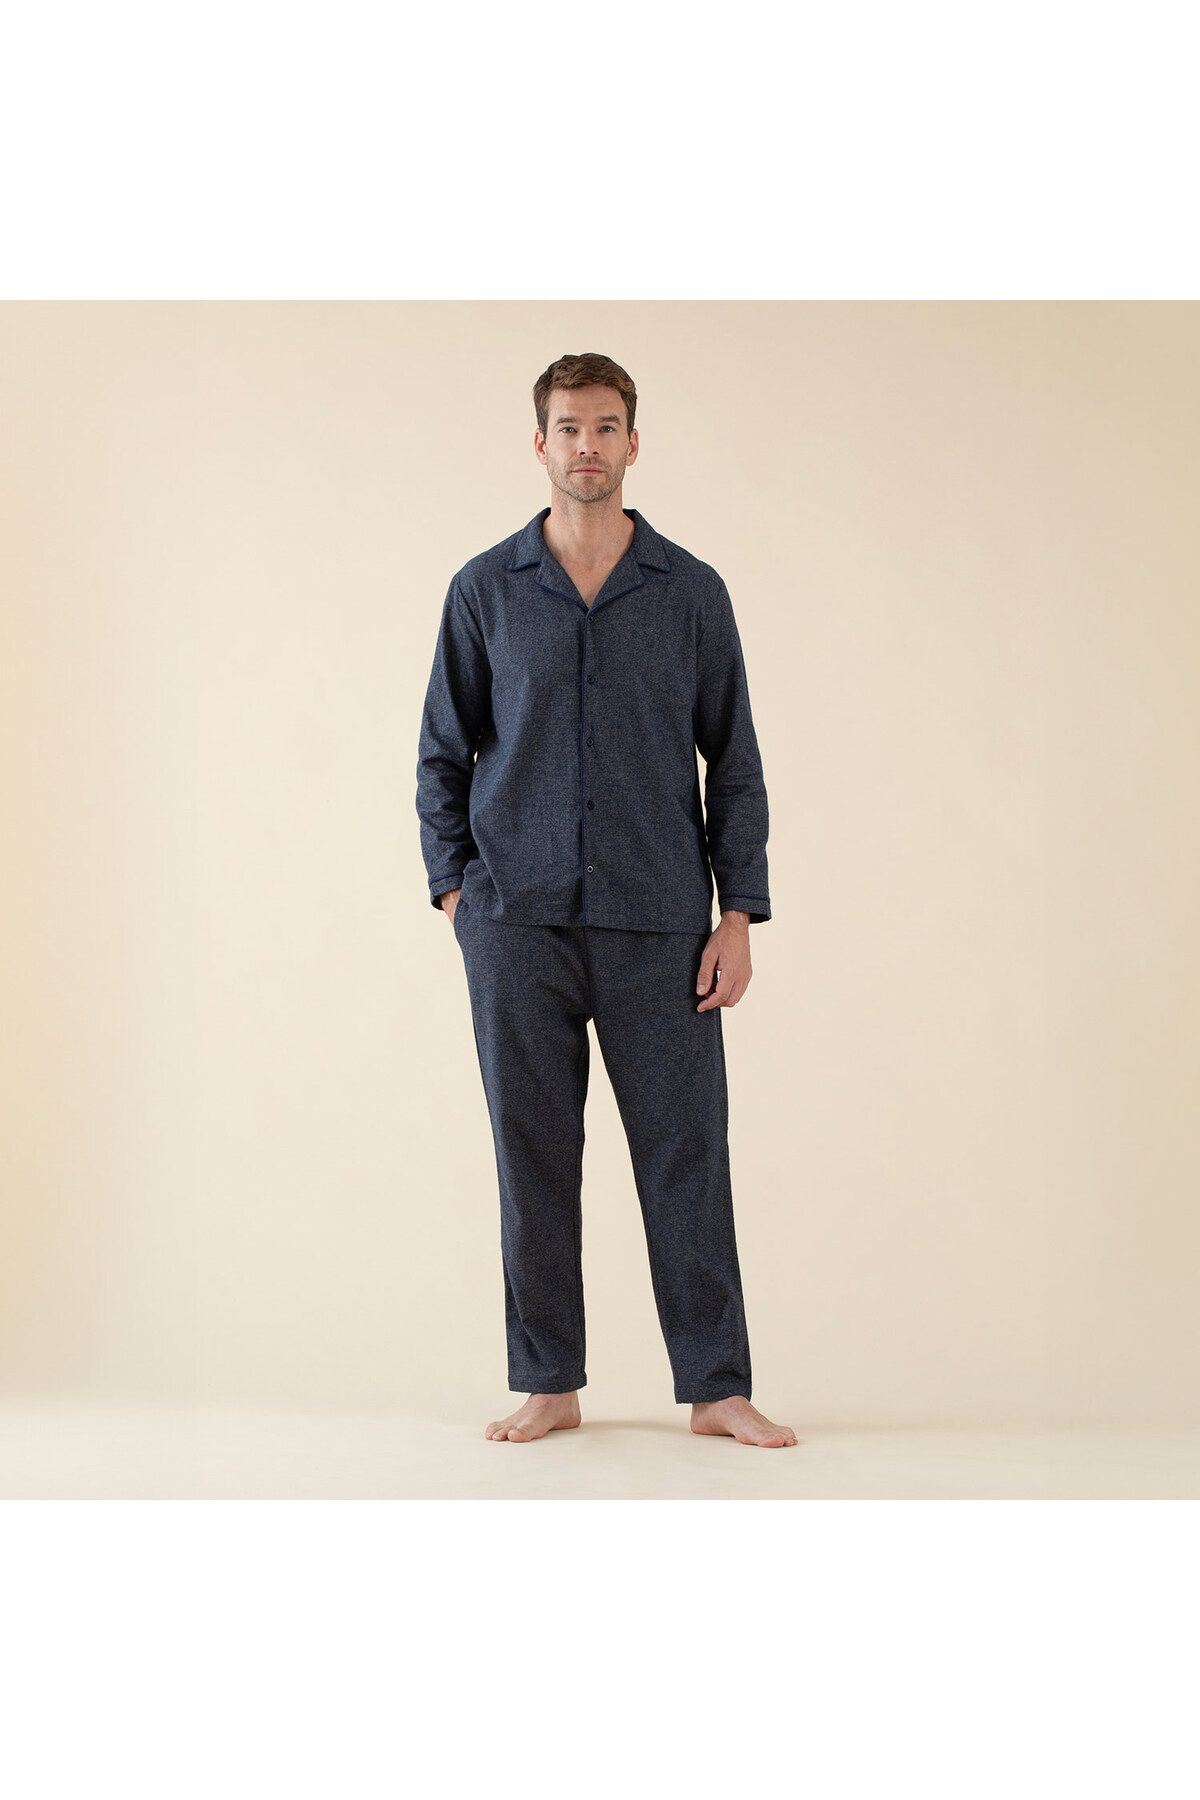 Chakra Cardamomo Erkek Pijama Takımı Marin Mavi